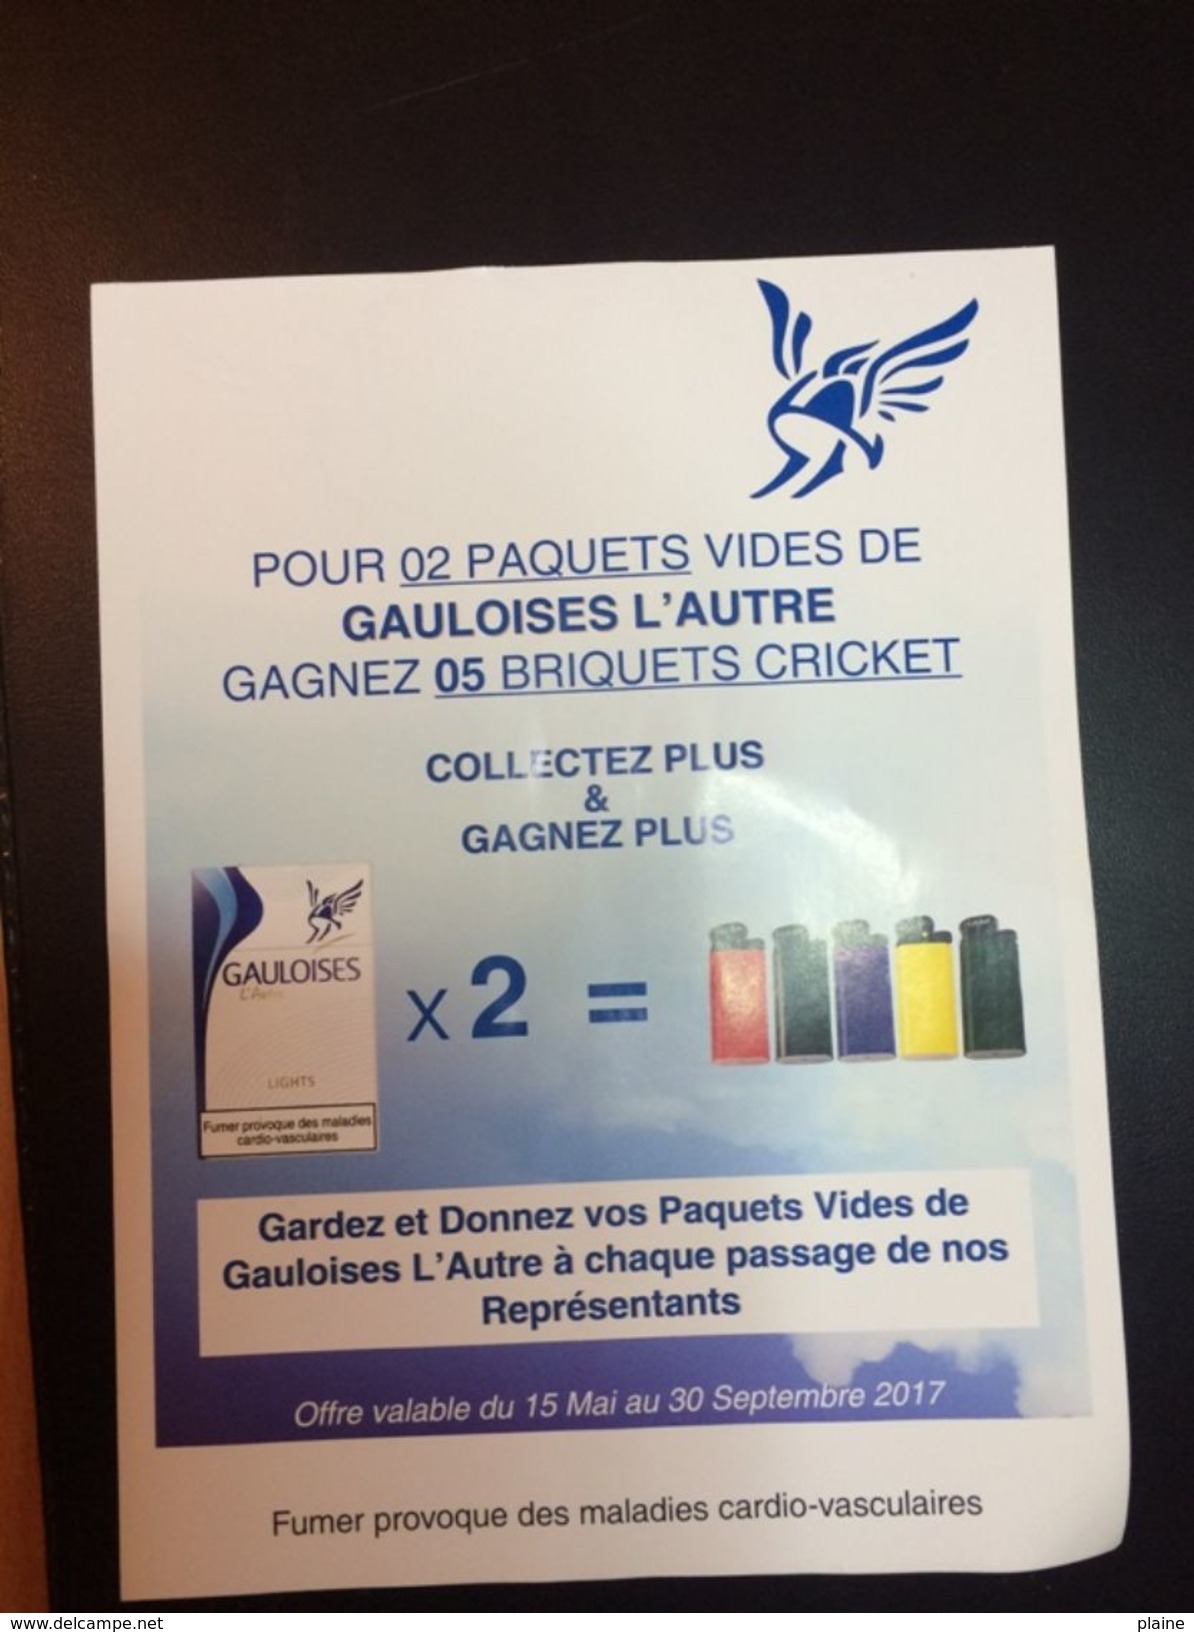 GAULOISES-PUBLICITE PAPIER-GAGNEZ 5 BRIQUETS - Advertising Items